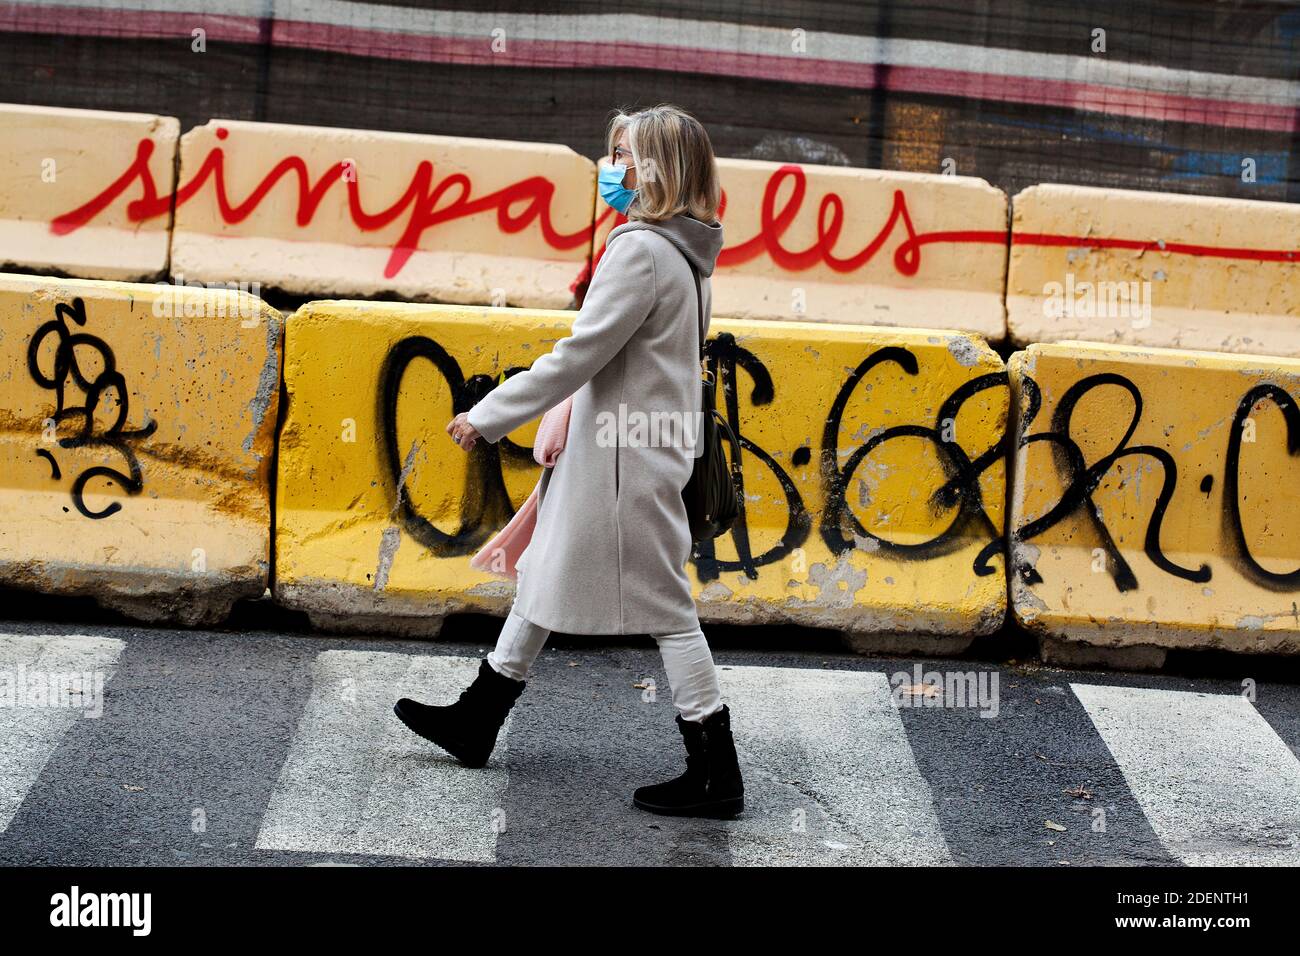 Woman walking briskly in the street, Barcelona. Stock Photo